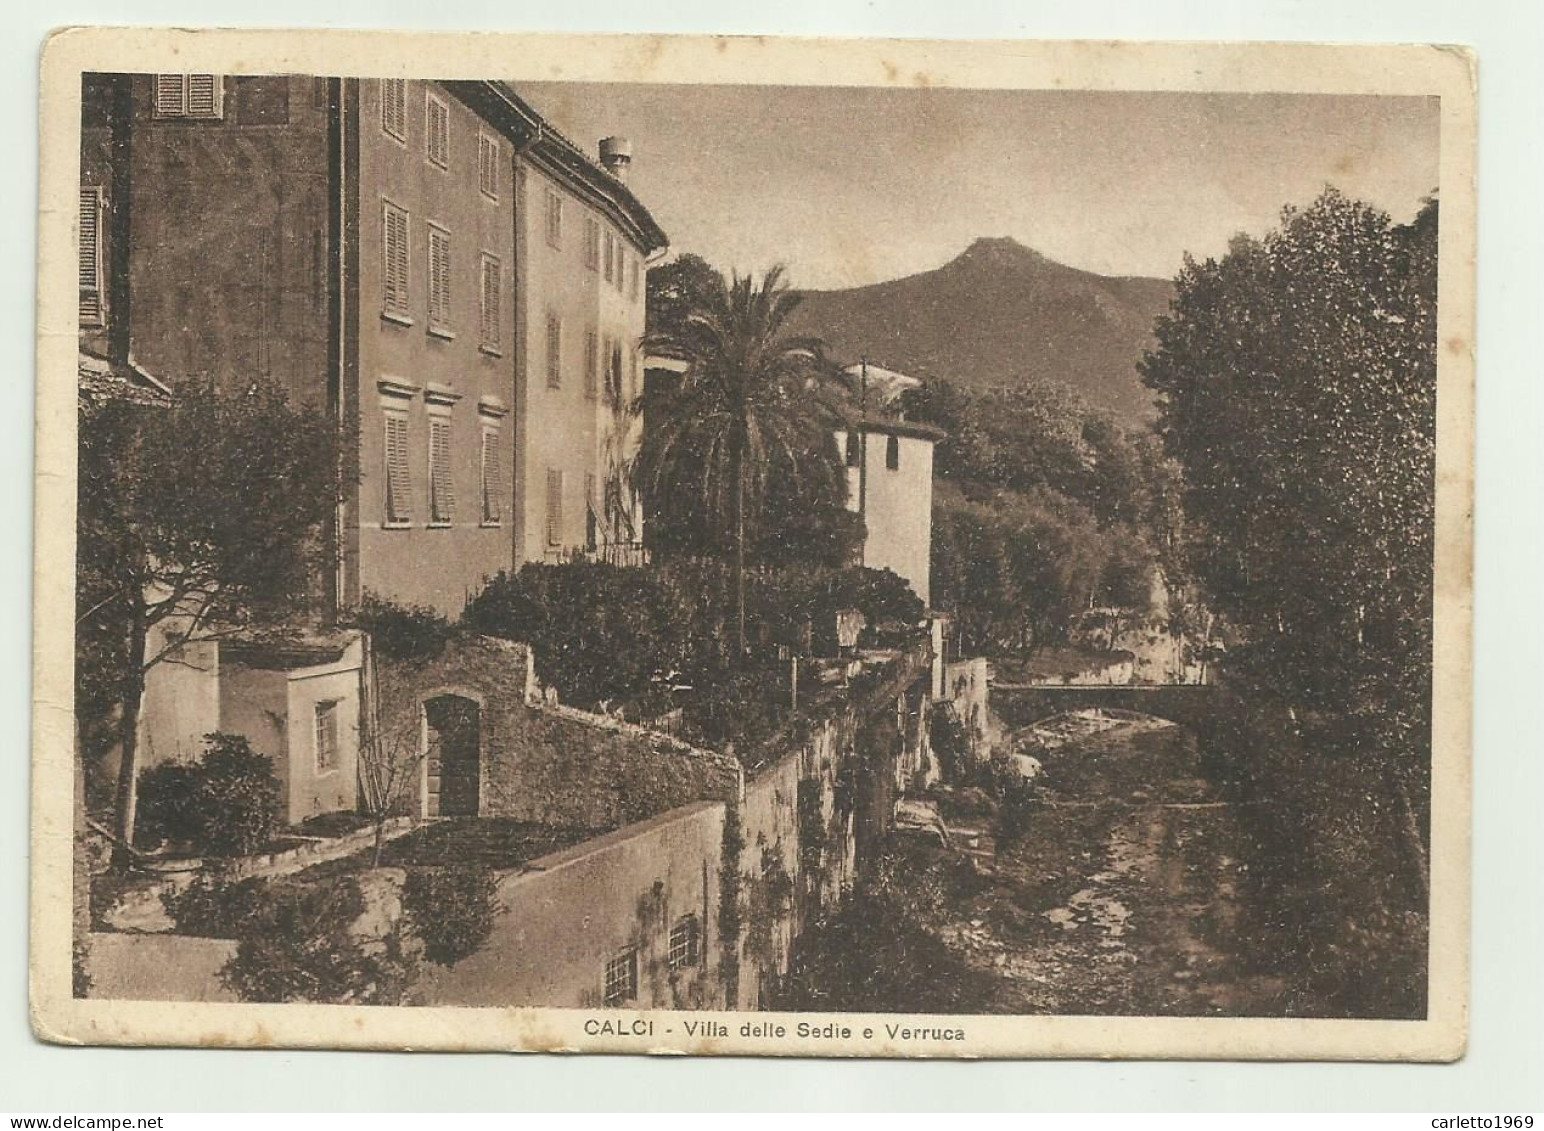 CALCI - VILLA DELLE SEDIE E VERRUCA 1939 - VIAGGIATA  FG - Pisa